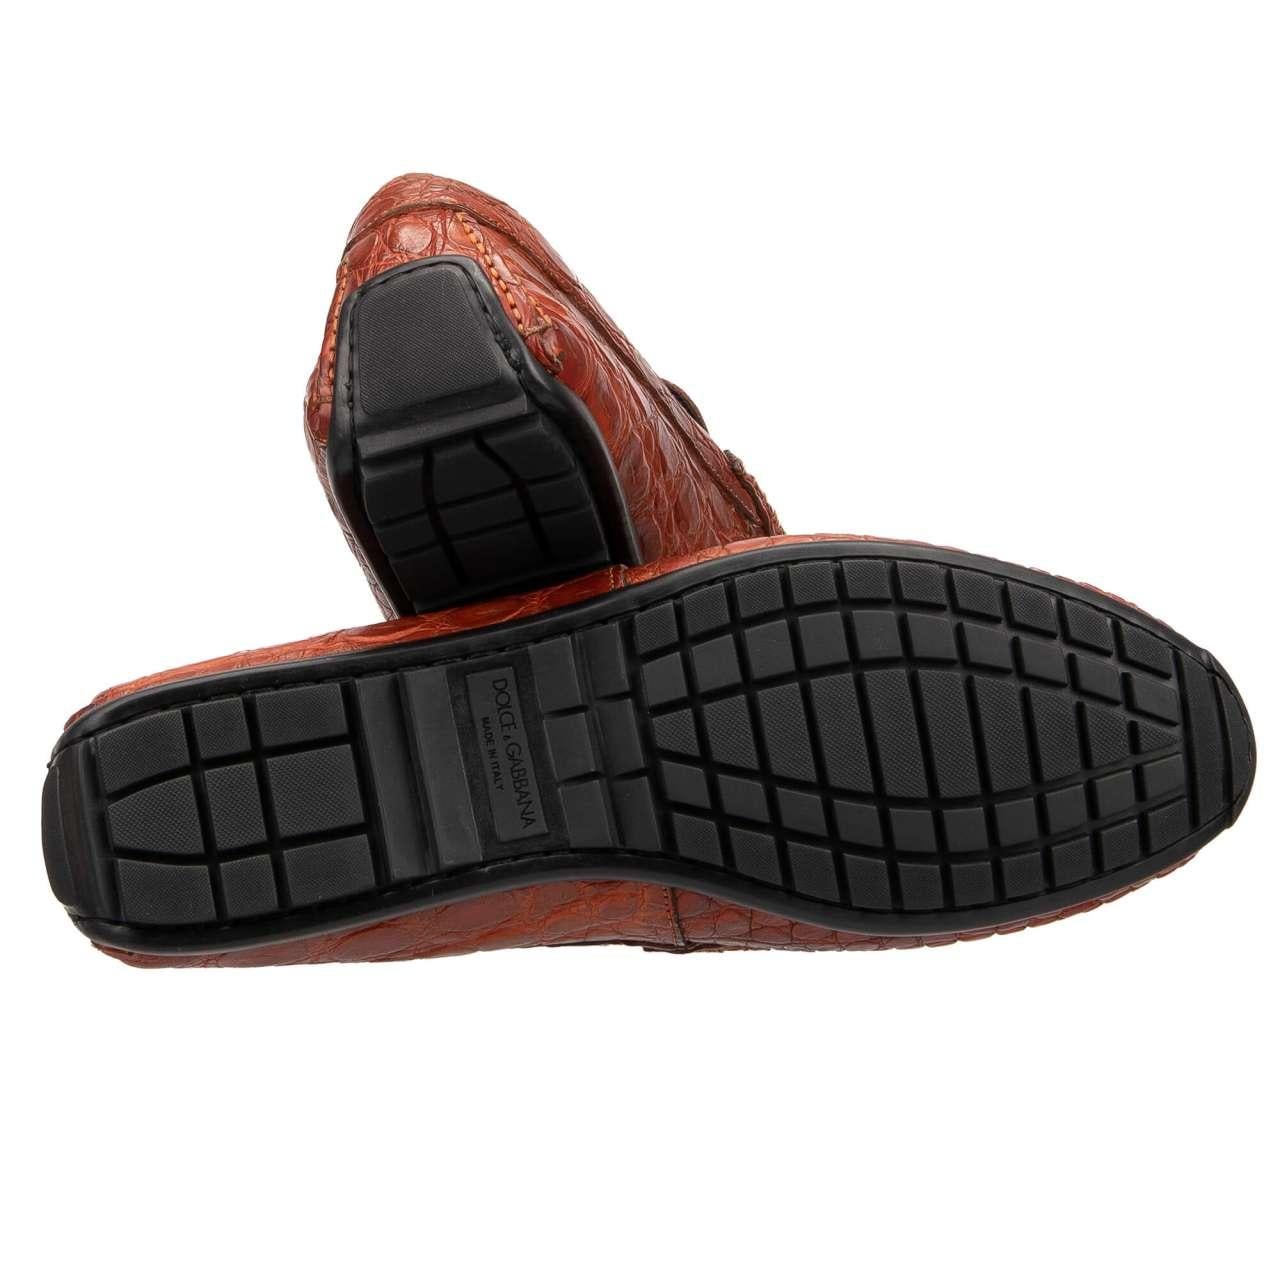 Dolce & Gabbana - Caiman Leather Moccasins Loafer Shoes RAGUSA Orange EUR 40 For Sale 2